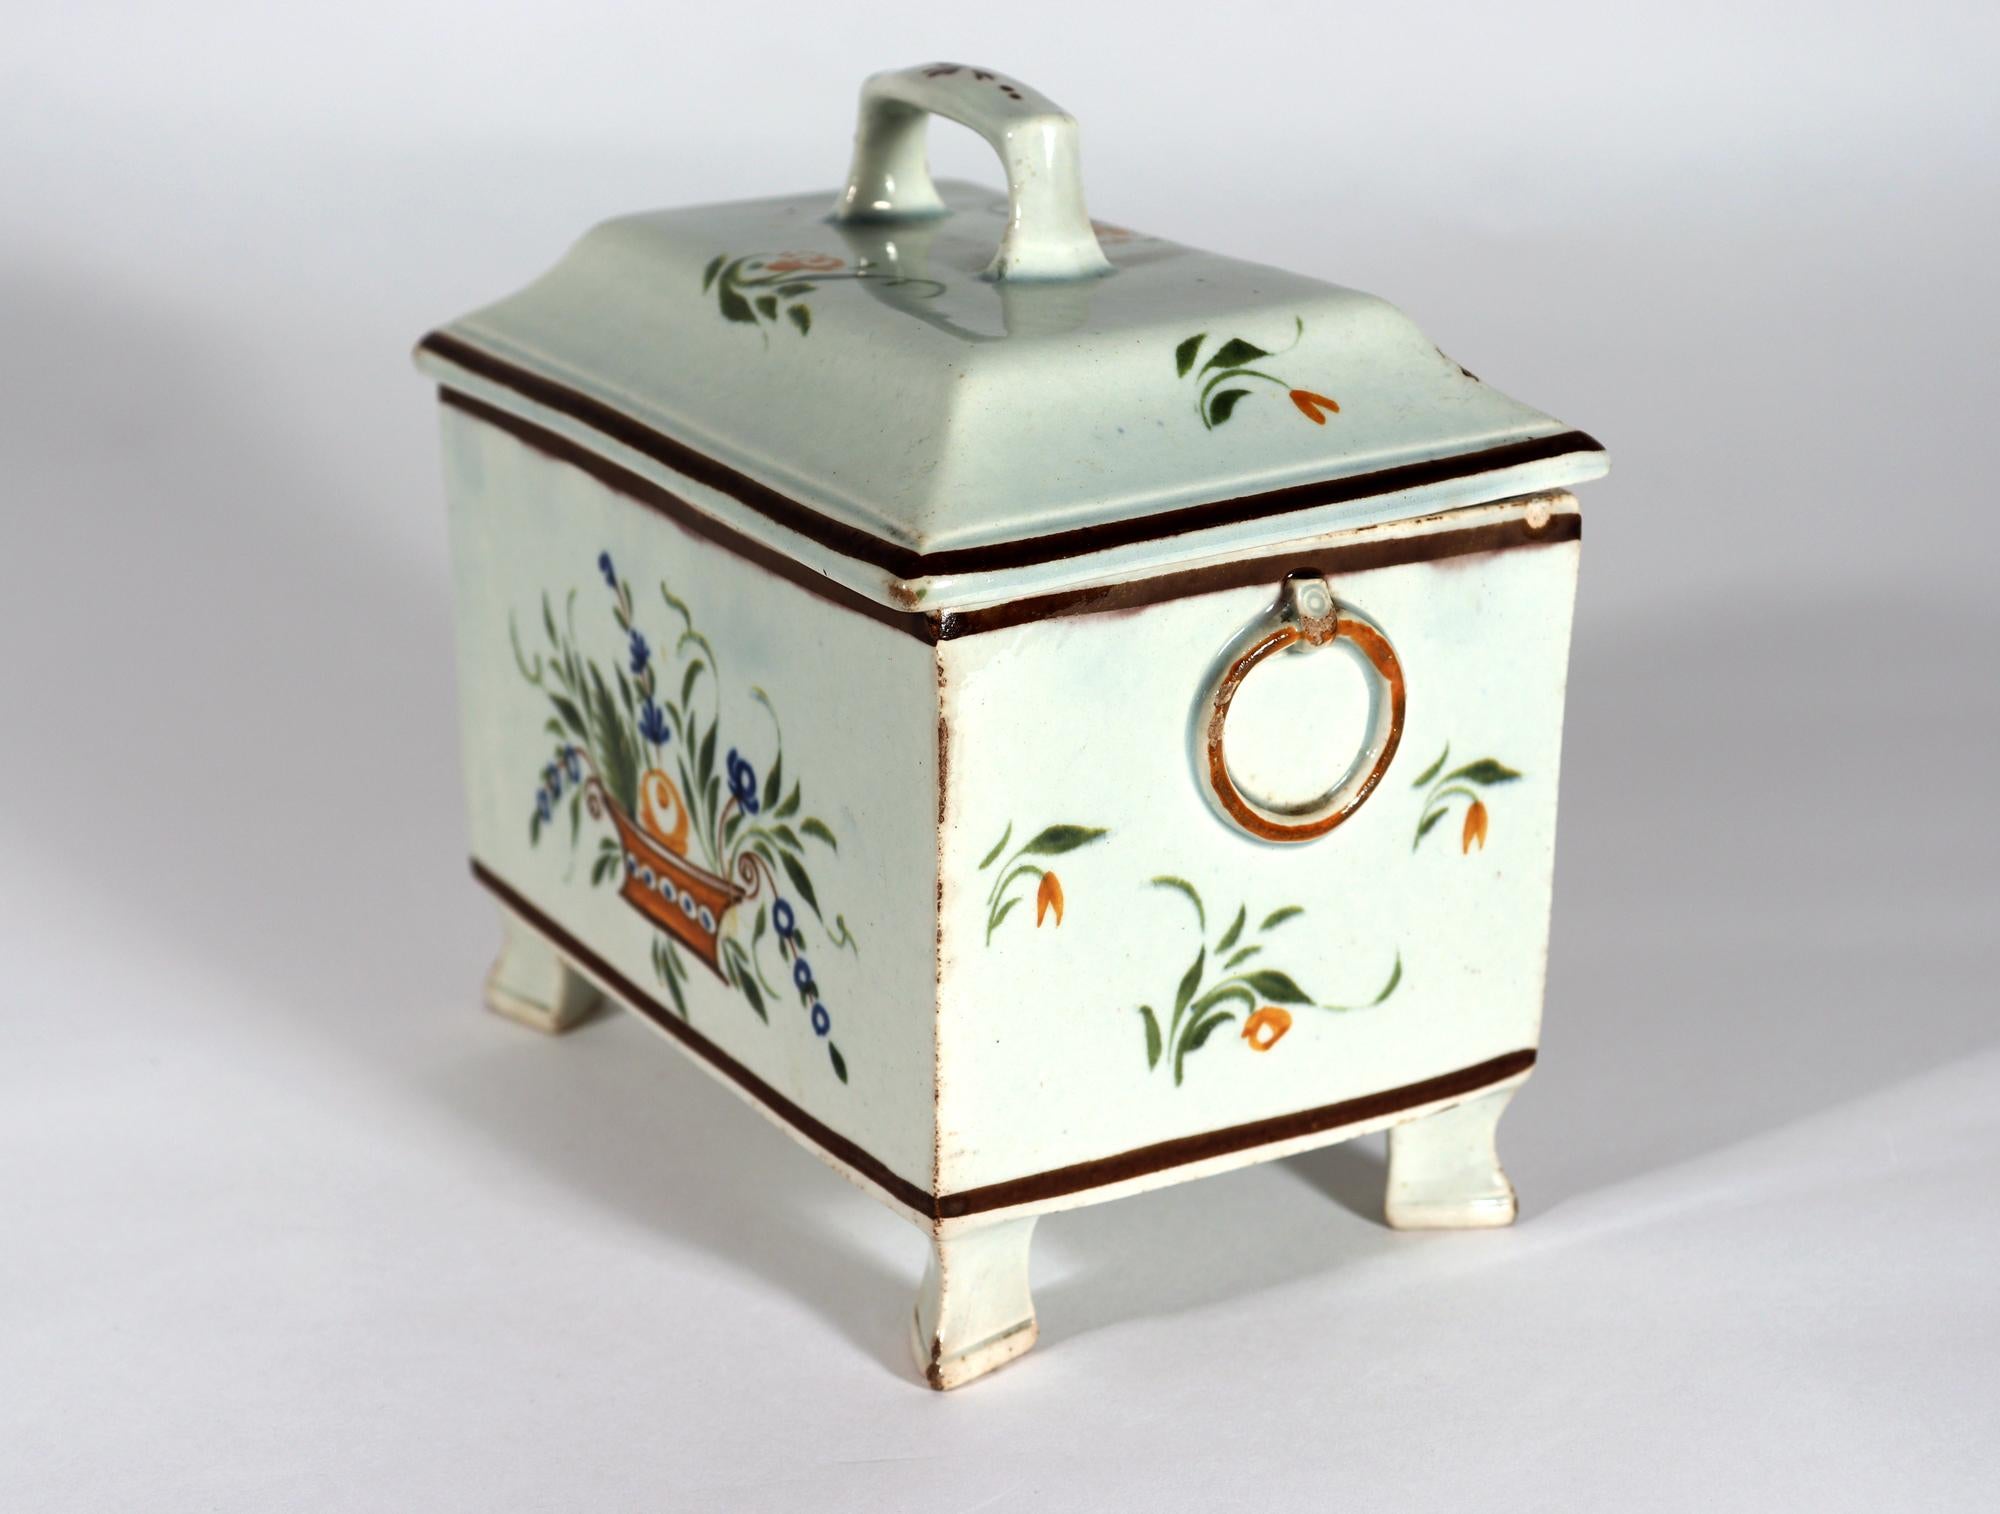 Boîte à thé Botanique couverte en poterie de Pearlware Prattware,
Poterie cambrienne, Swansea
Circa 1800-20

La boîte à thé à pied de forme rectangulaire en poterie perlée est peinte aux couleurs de Pratt (bleu, vert et orange) sur chaque côté